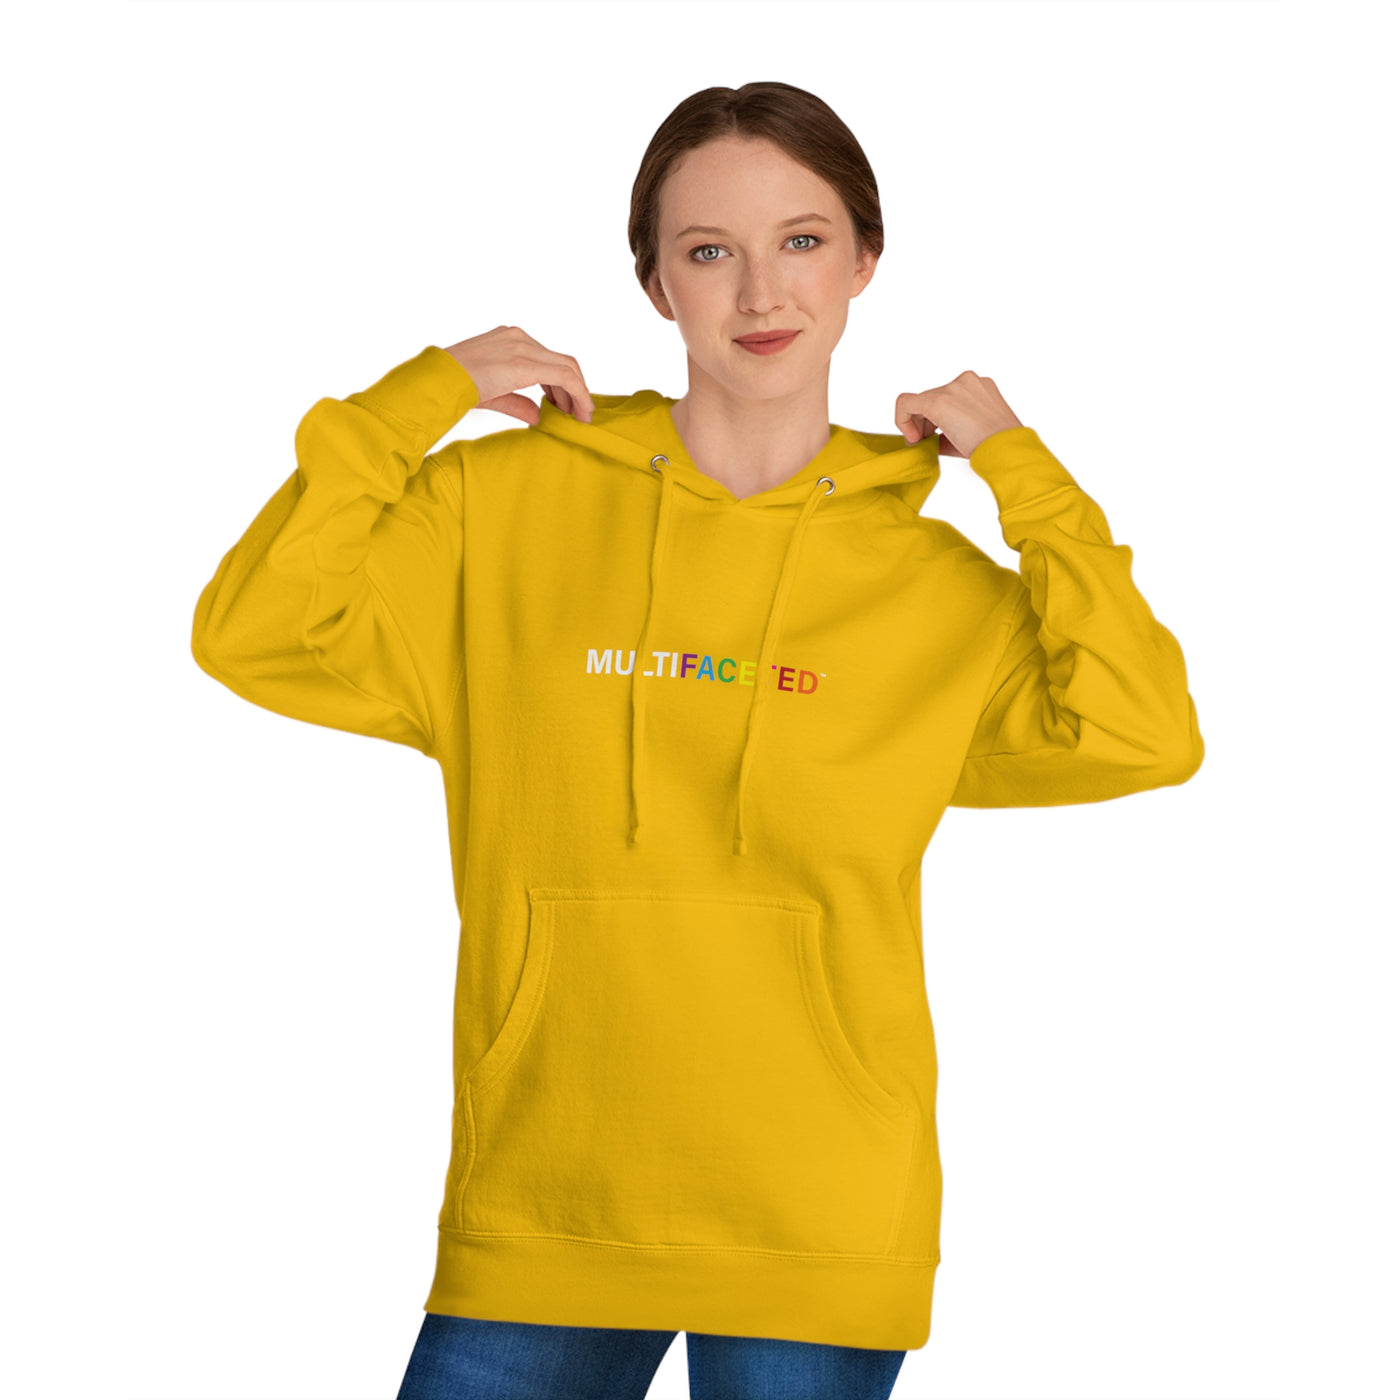 Unisex Hooded Sweatshirt - Colorful Hoodie - Multifaceted Hoodie